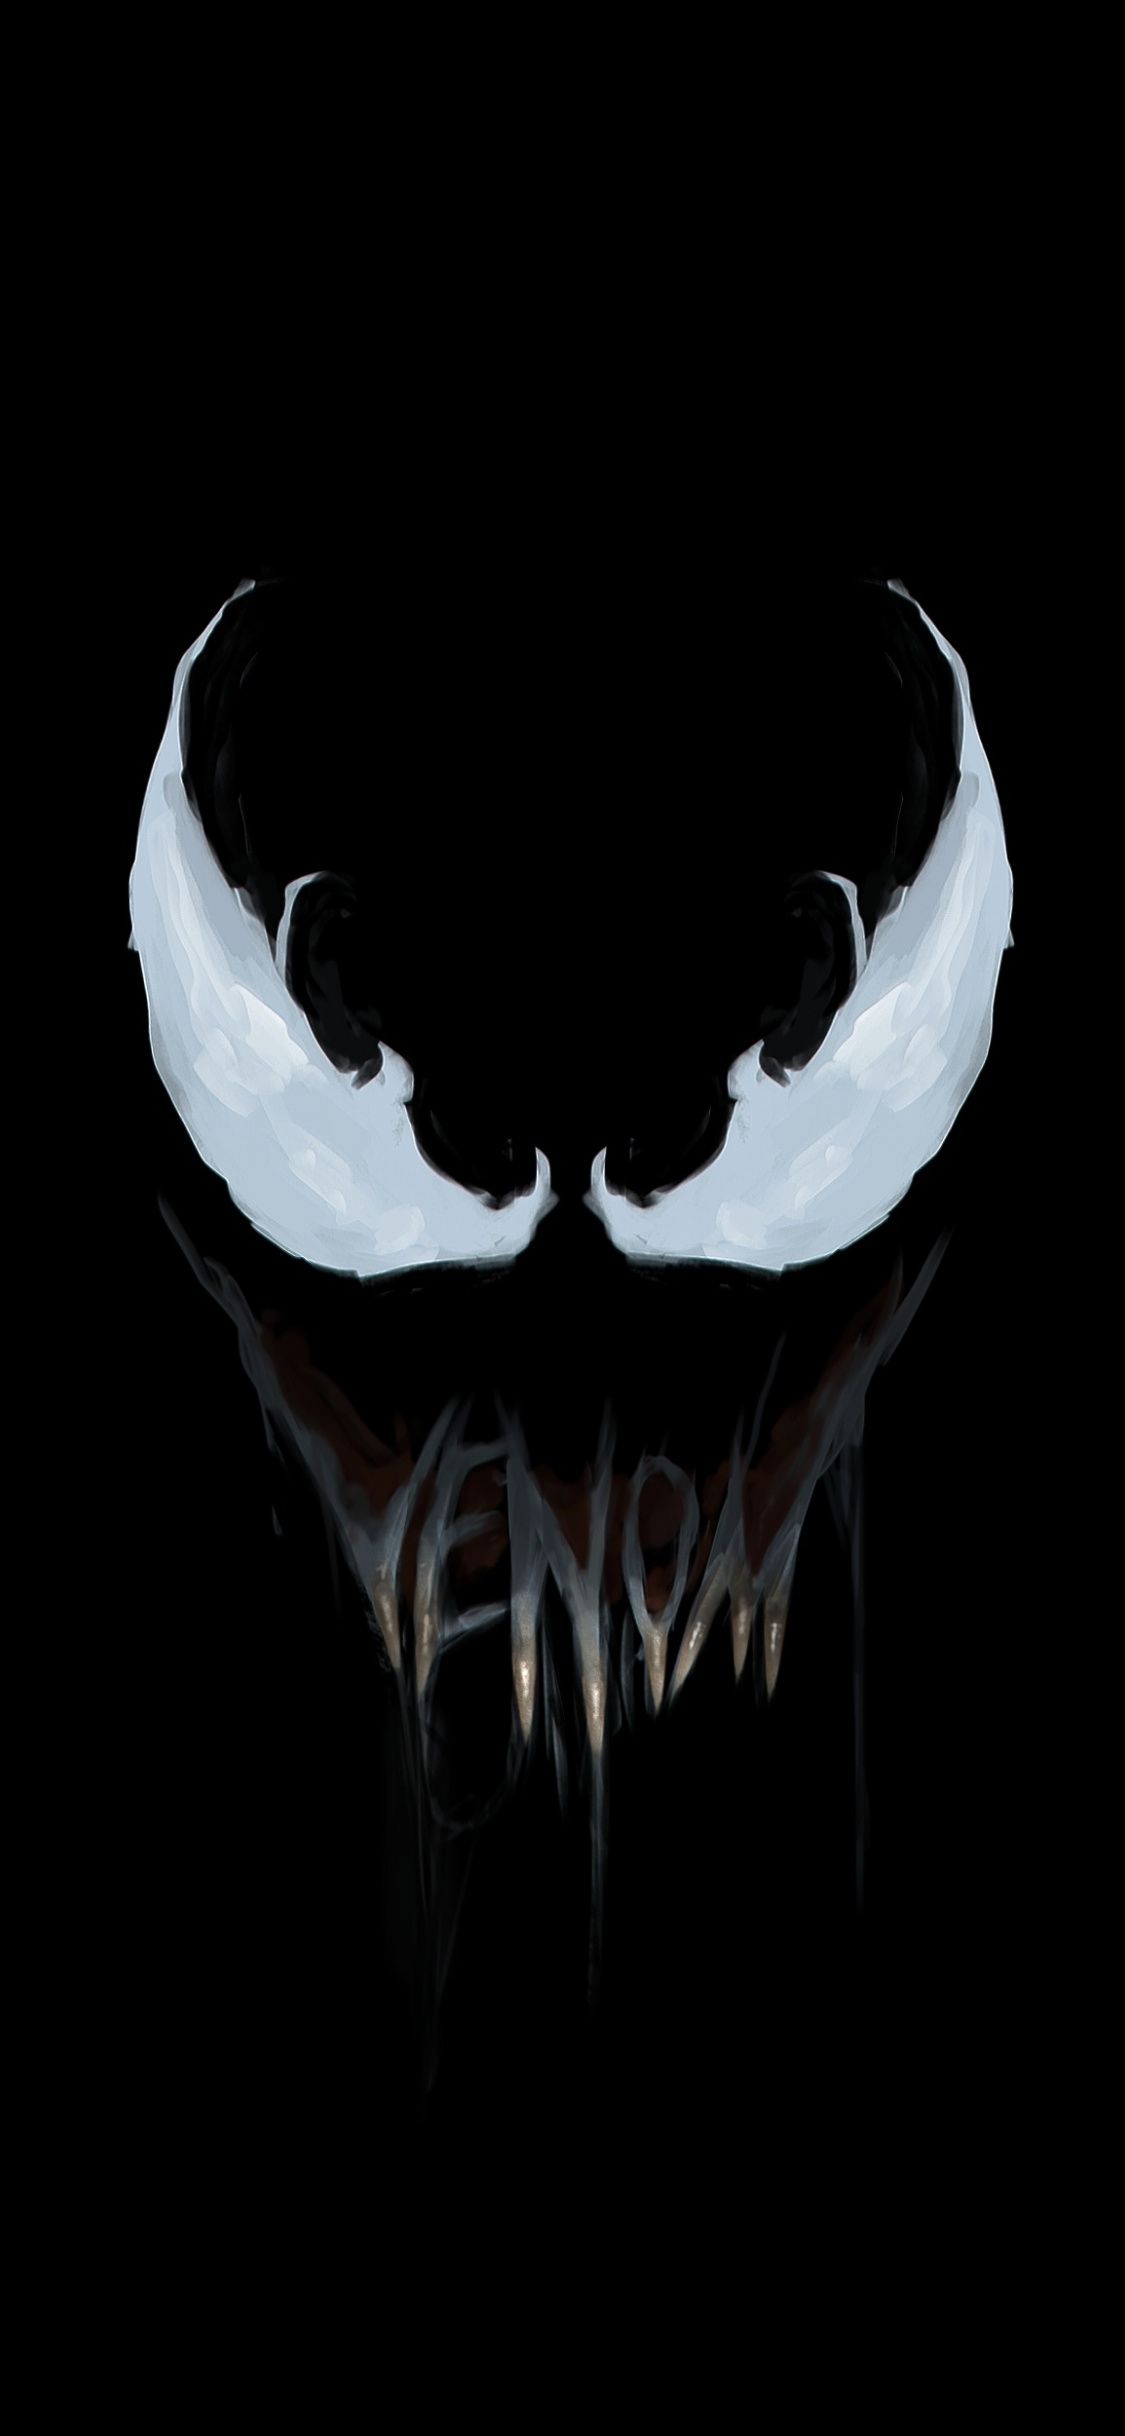 Minimal, Venom, Super Villain, Art .ar.com